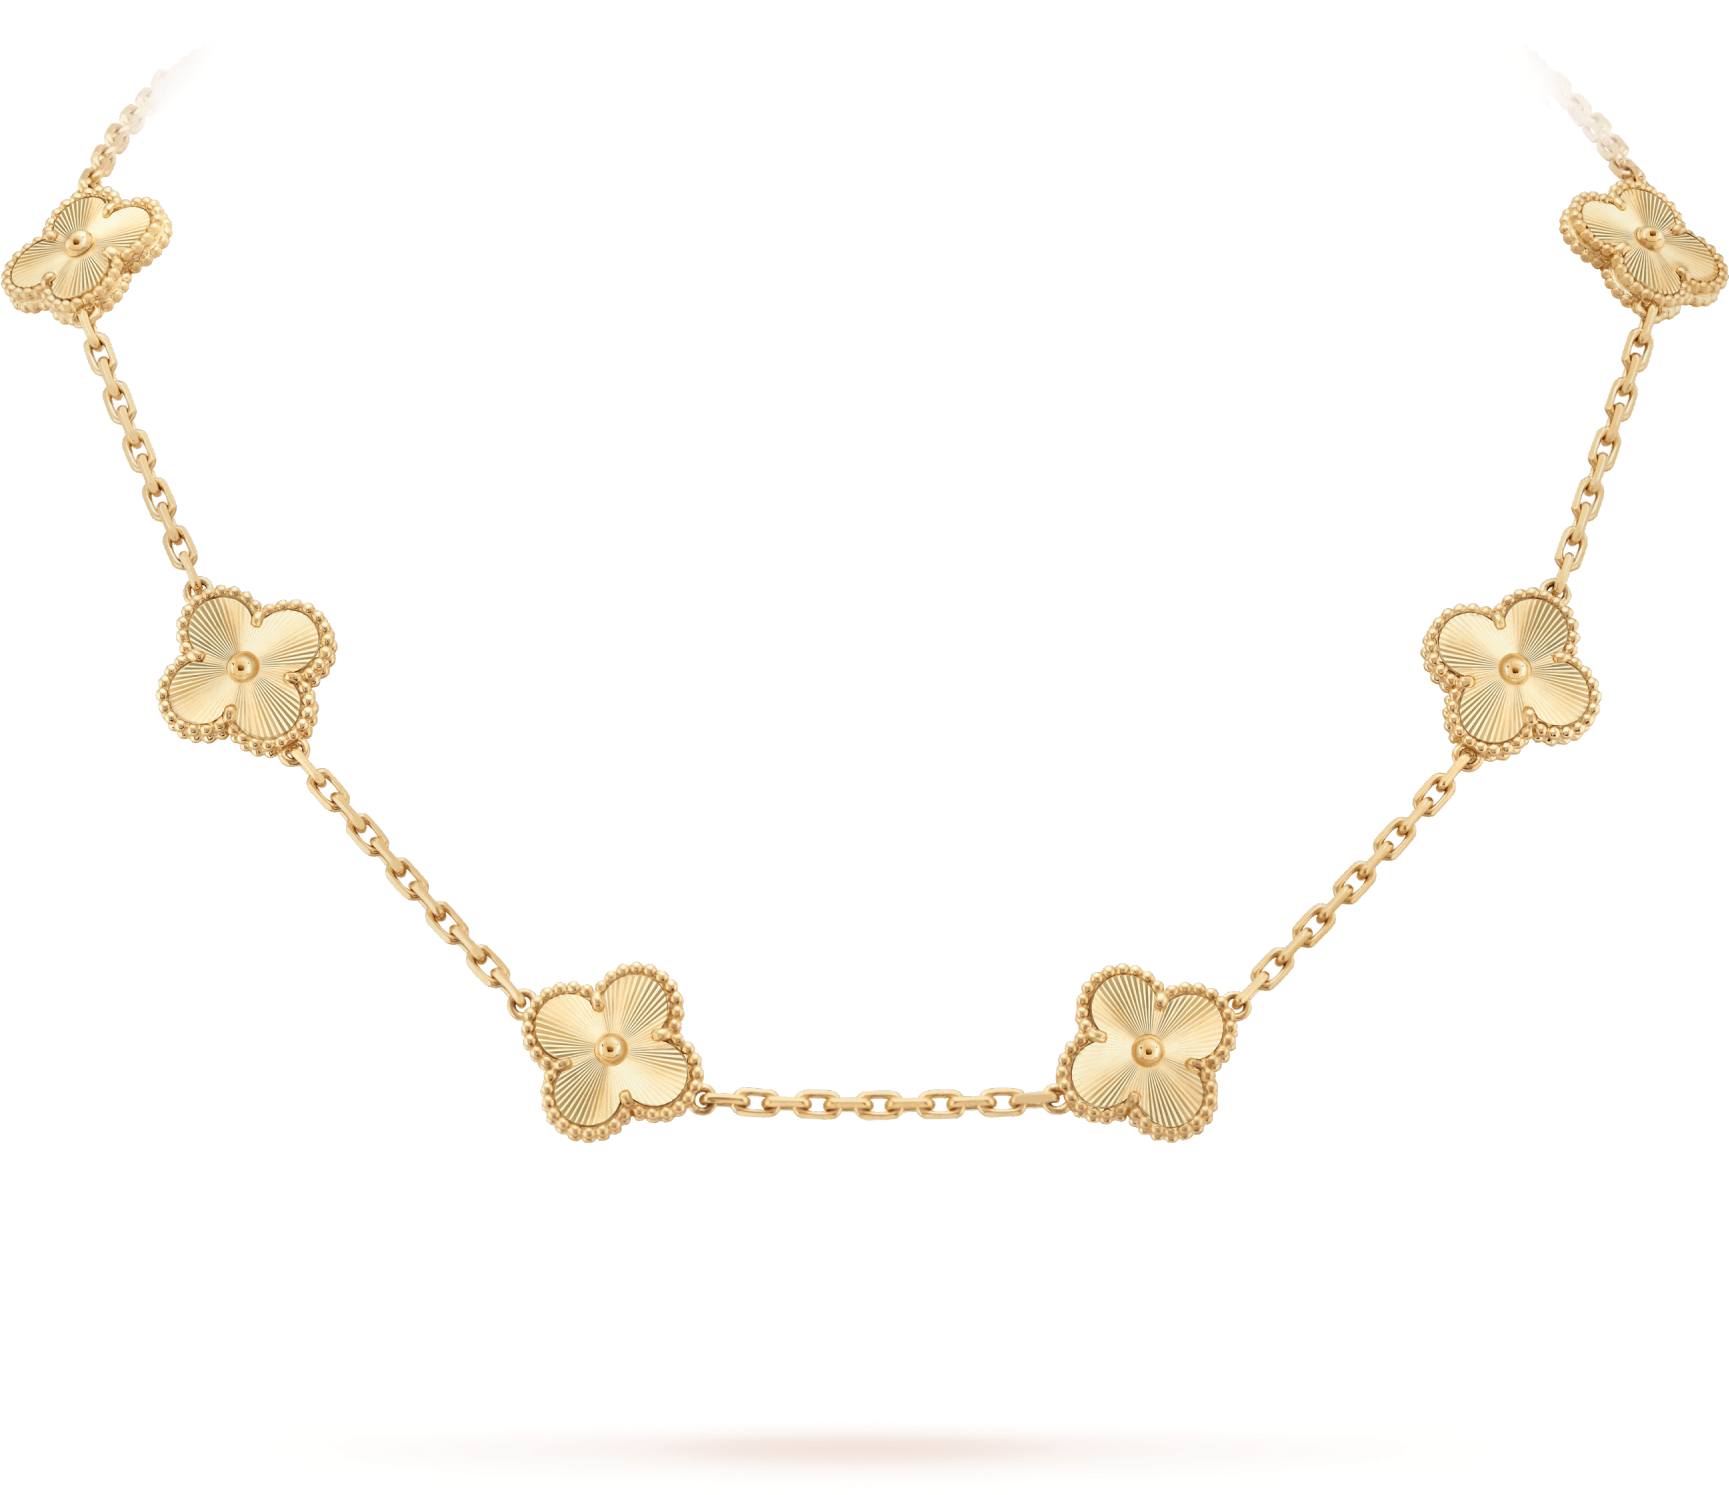 Fond de limage PNG dames Golden Chain